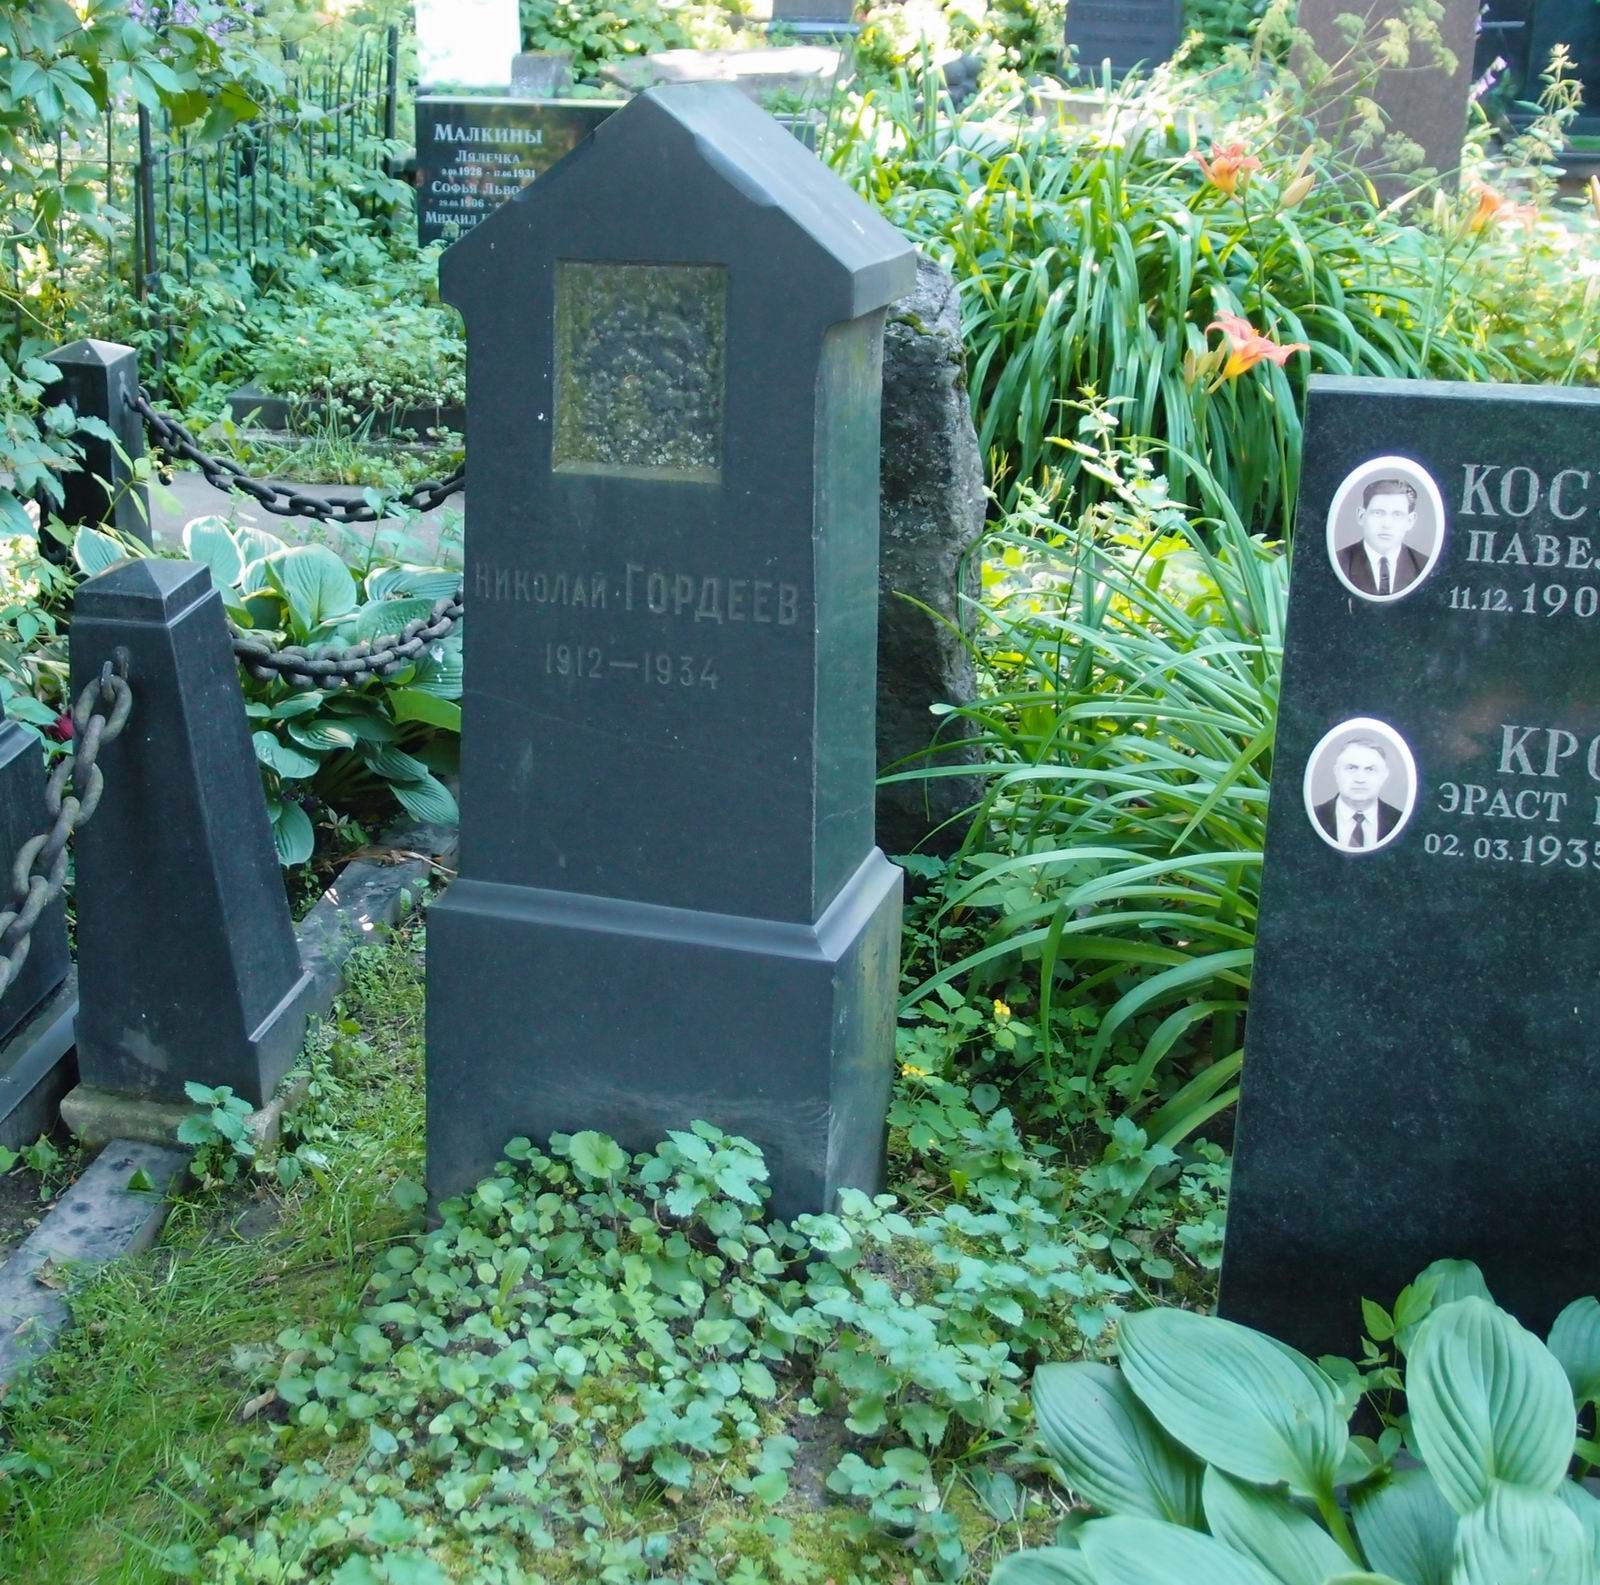 Памятник на могиле Гордеева Н. (1912-1934), на Новодевичьем кладбище (2-39-16).